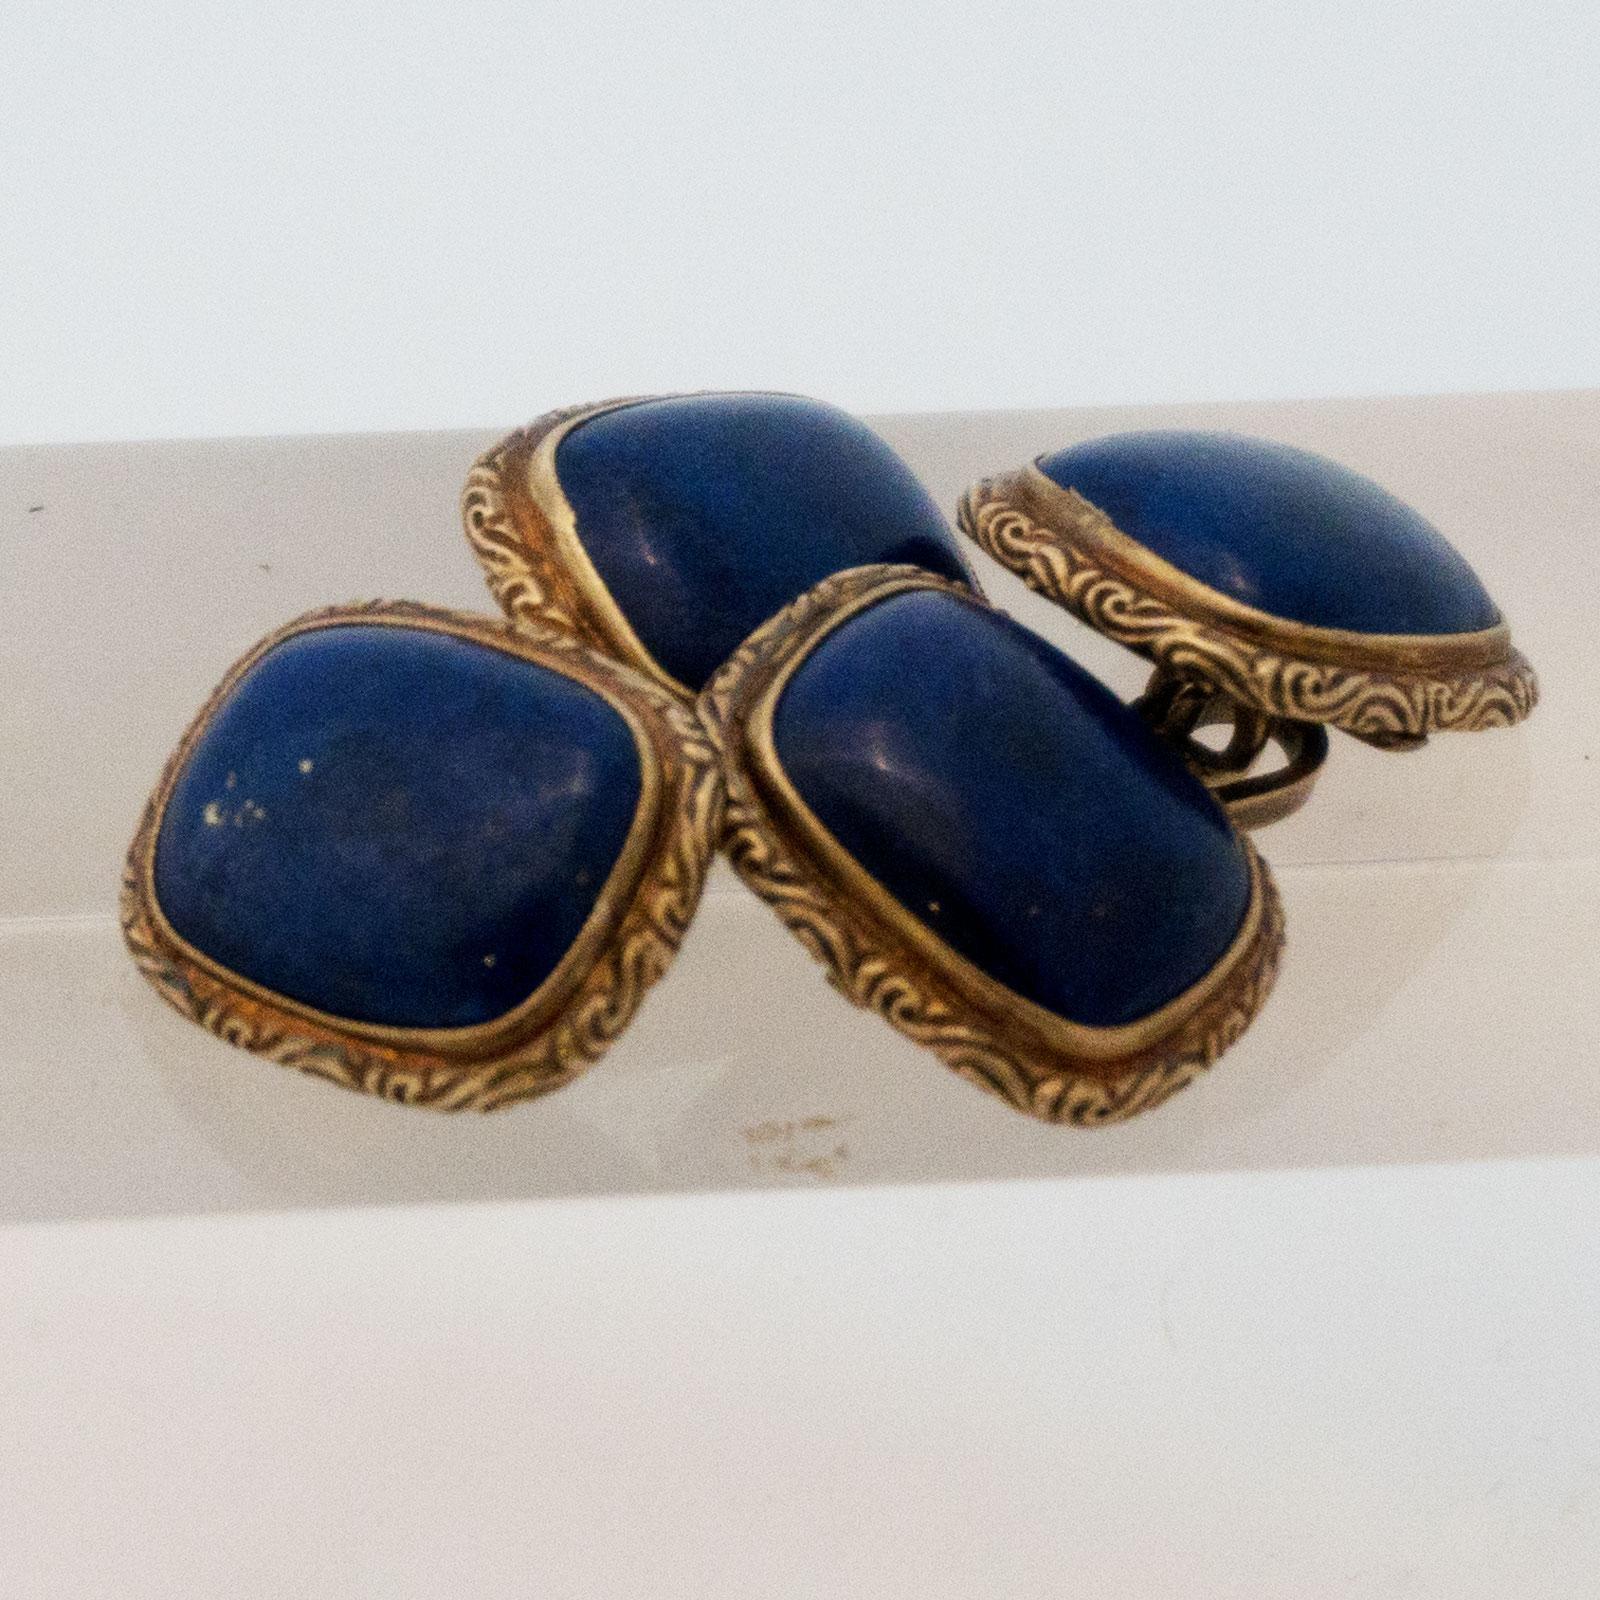 Art Nouveau Golden Cufflinks with Lapis Lazuli